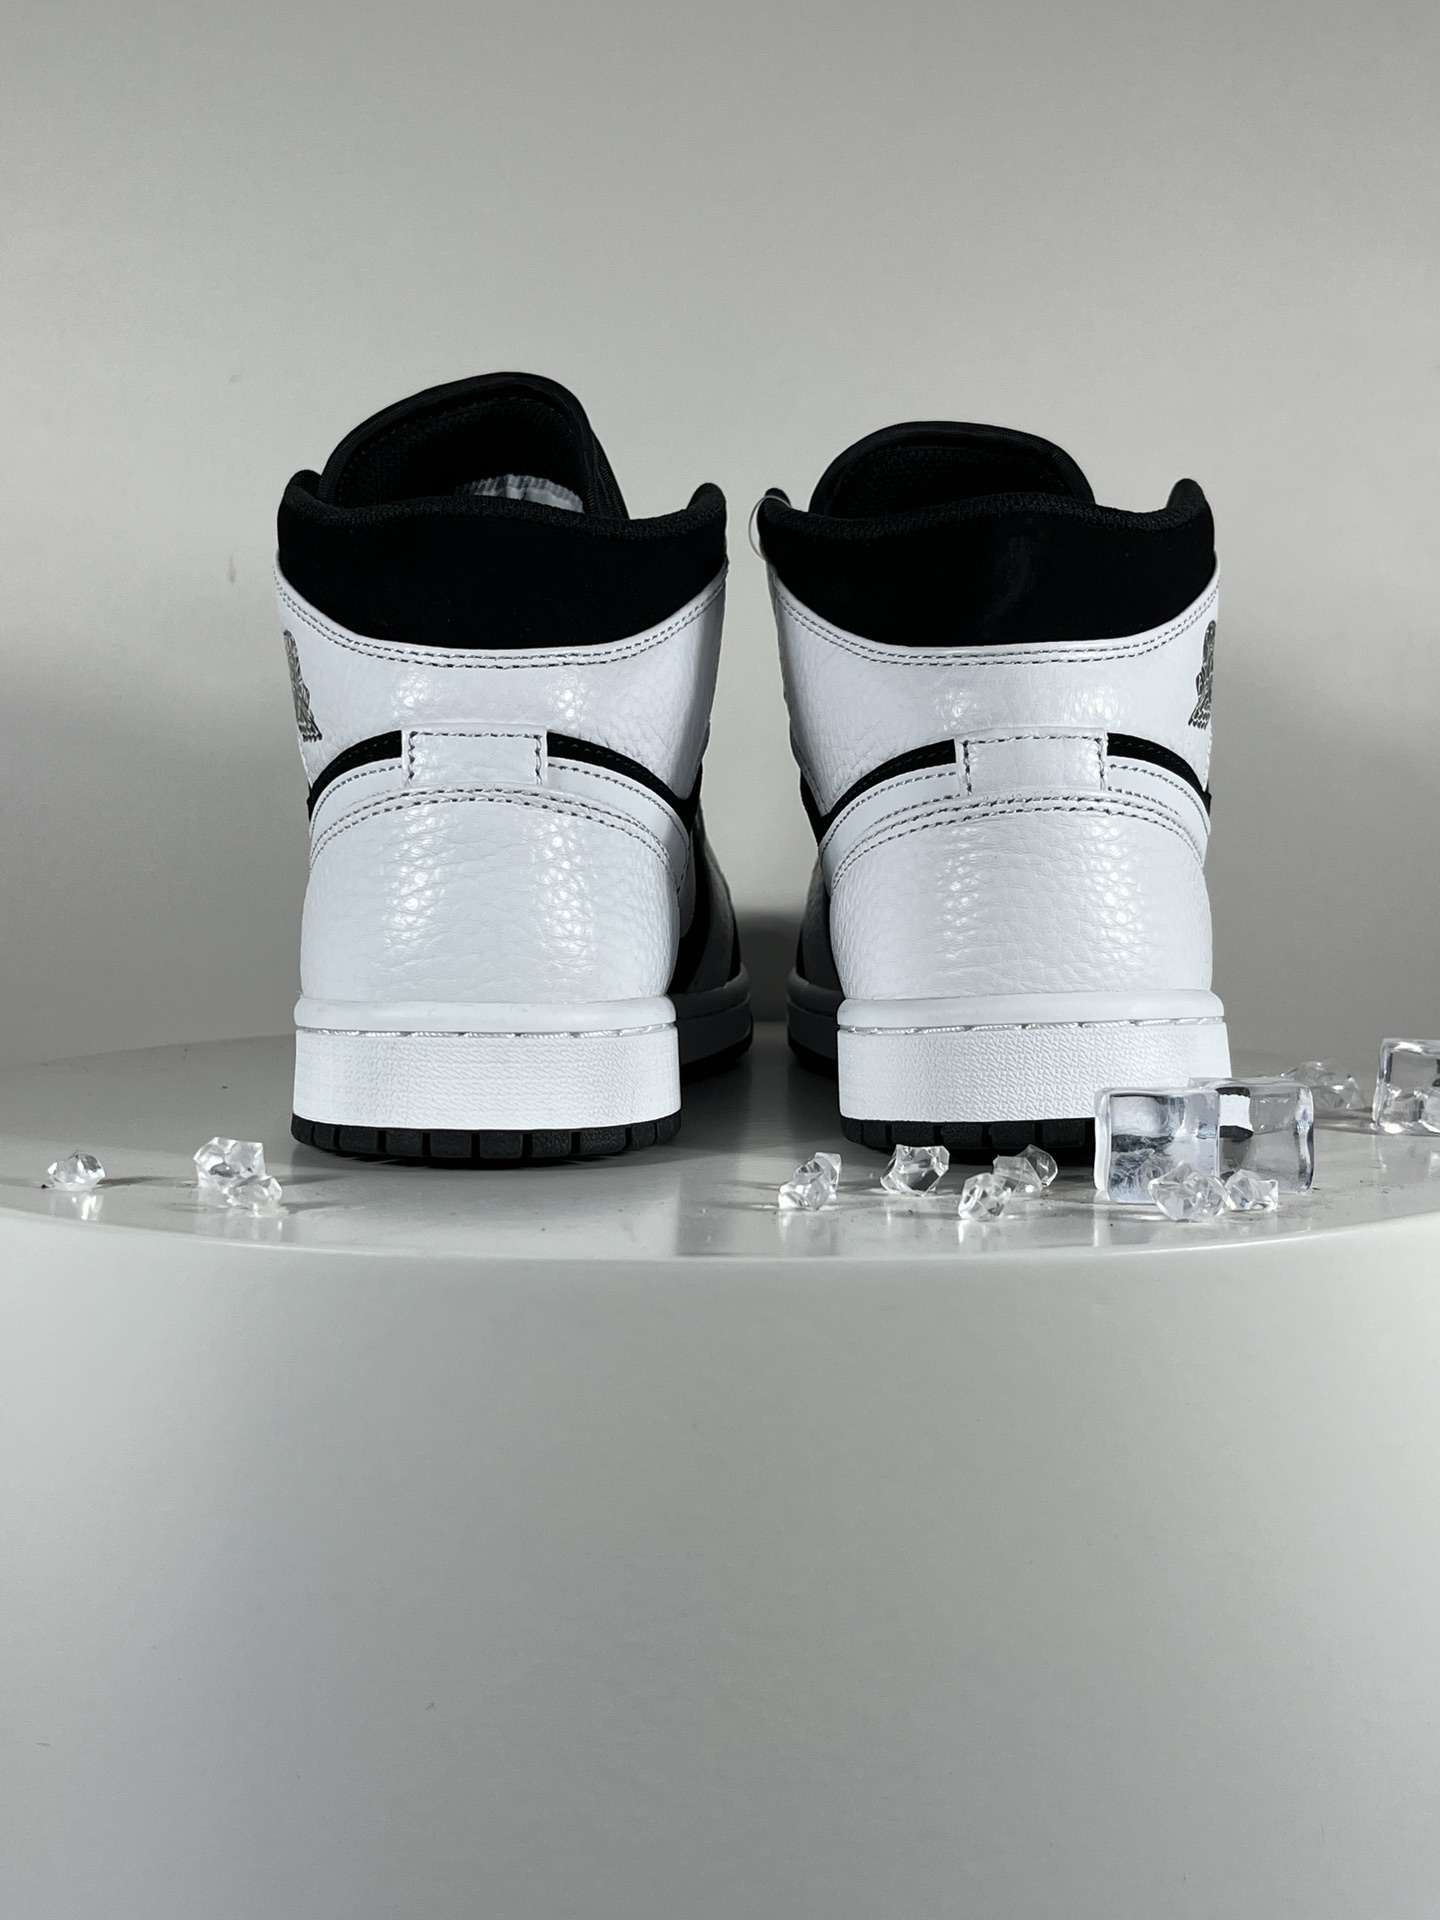 纯原过验版AirJordanMid黑白熊猫全鞋原厂材料鞋头皮料同步公司正品鞋头皮料为二层皮原档案数据开发